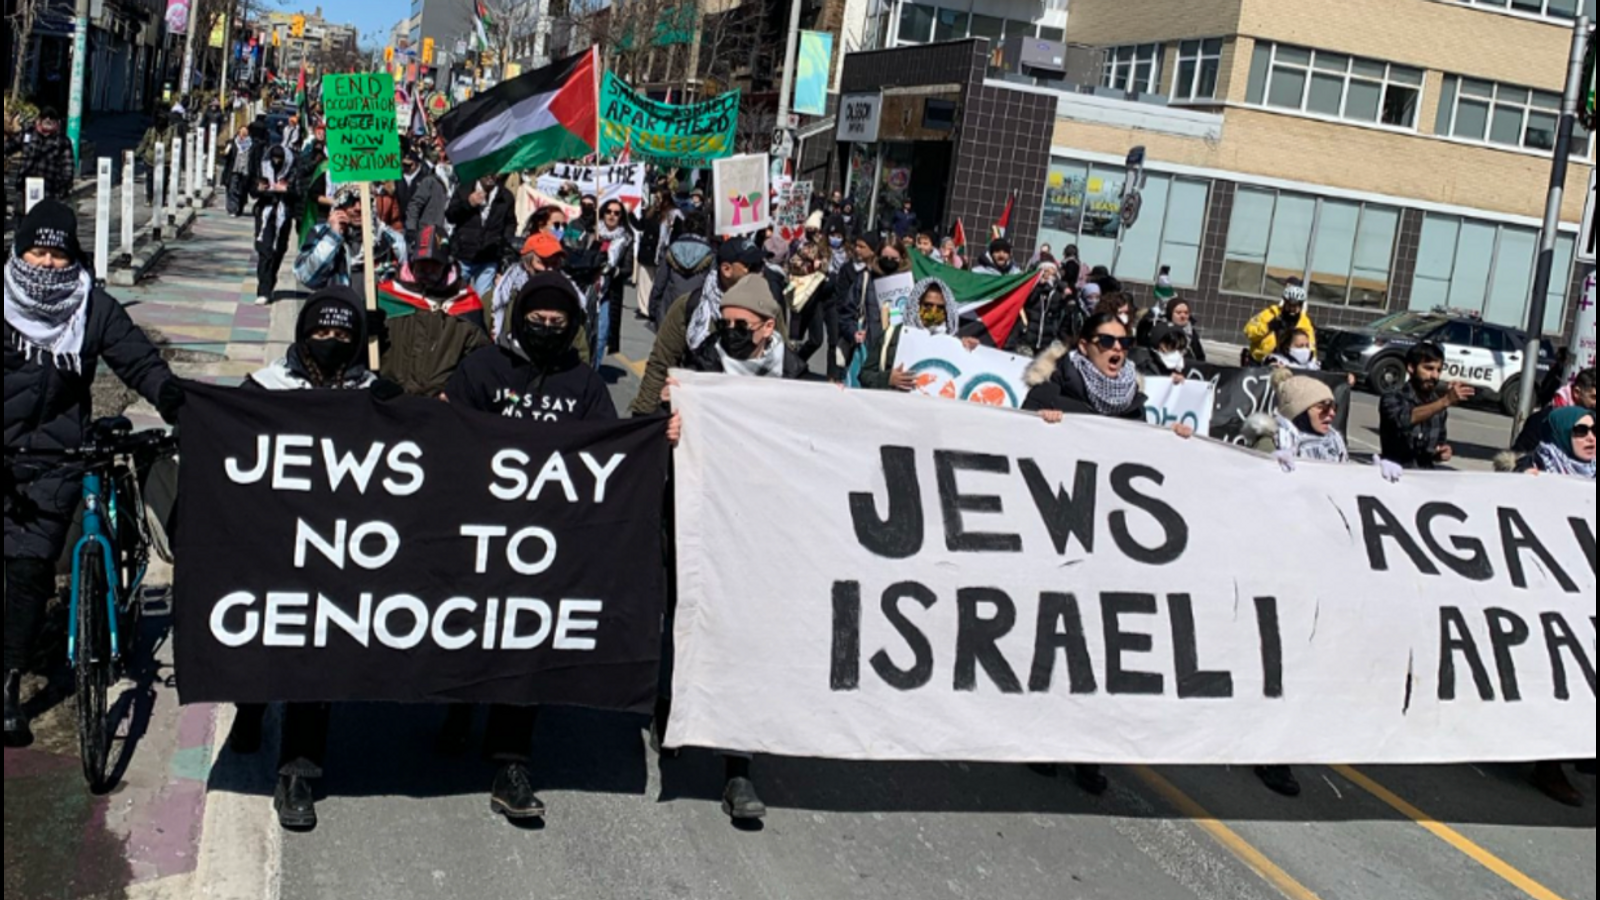 Das kanadische politische Establishment erklärt den jüngsten Protest in Toronto für antisemitisch und verschärft seine Kampagne, um den Widerstand gegen den Völkermord in Gaza zu unterdrücken